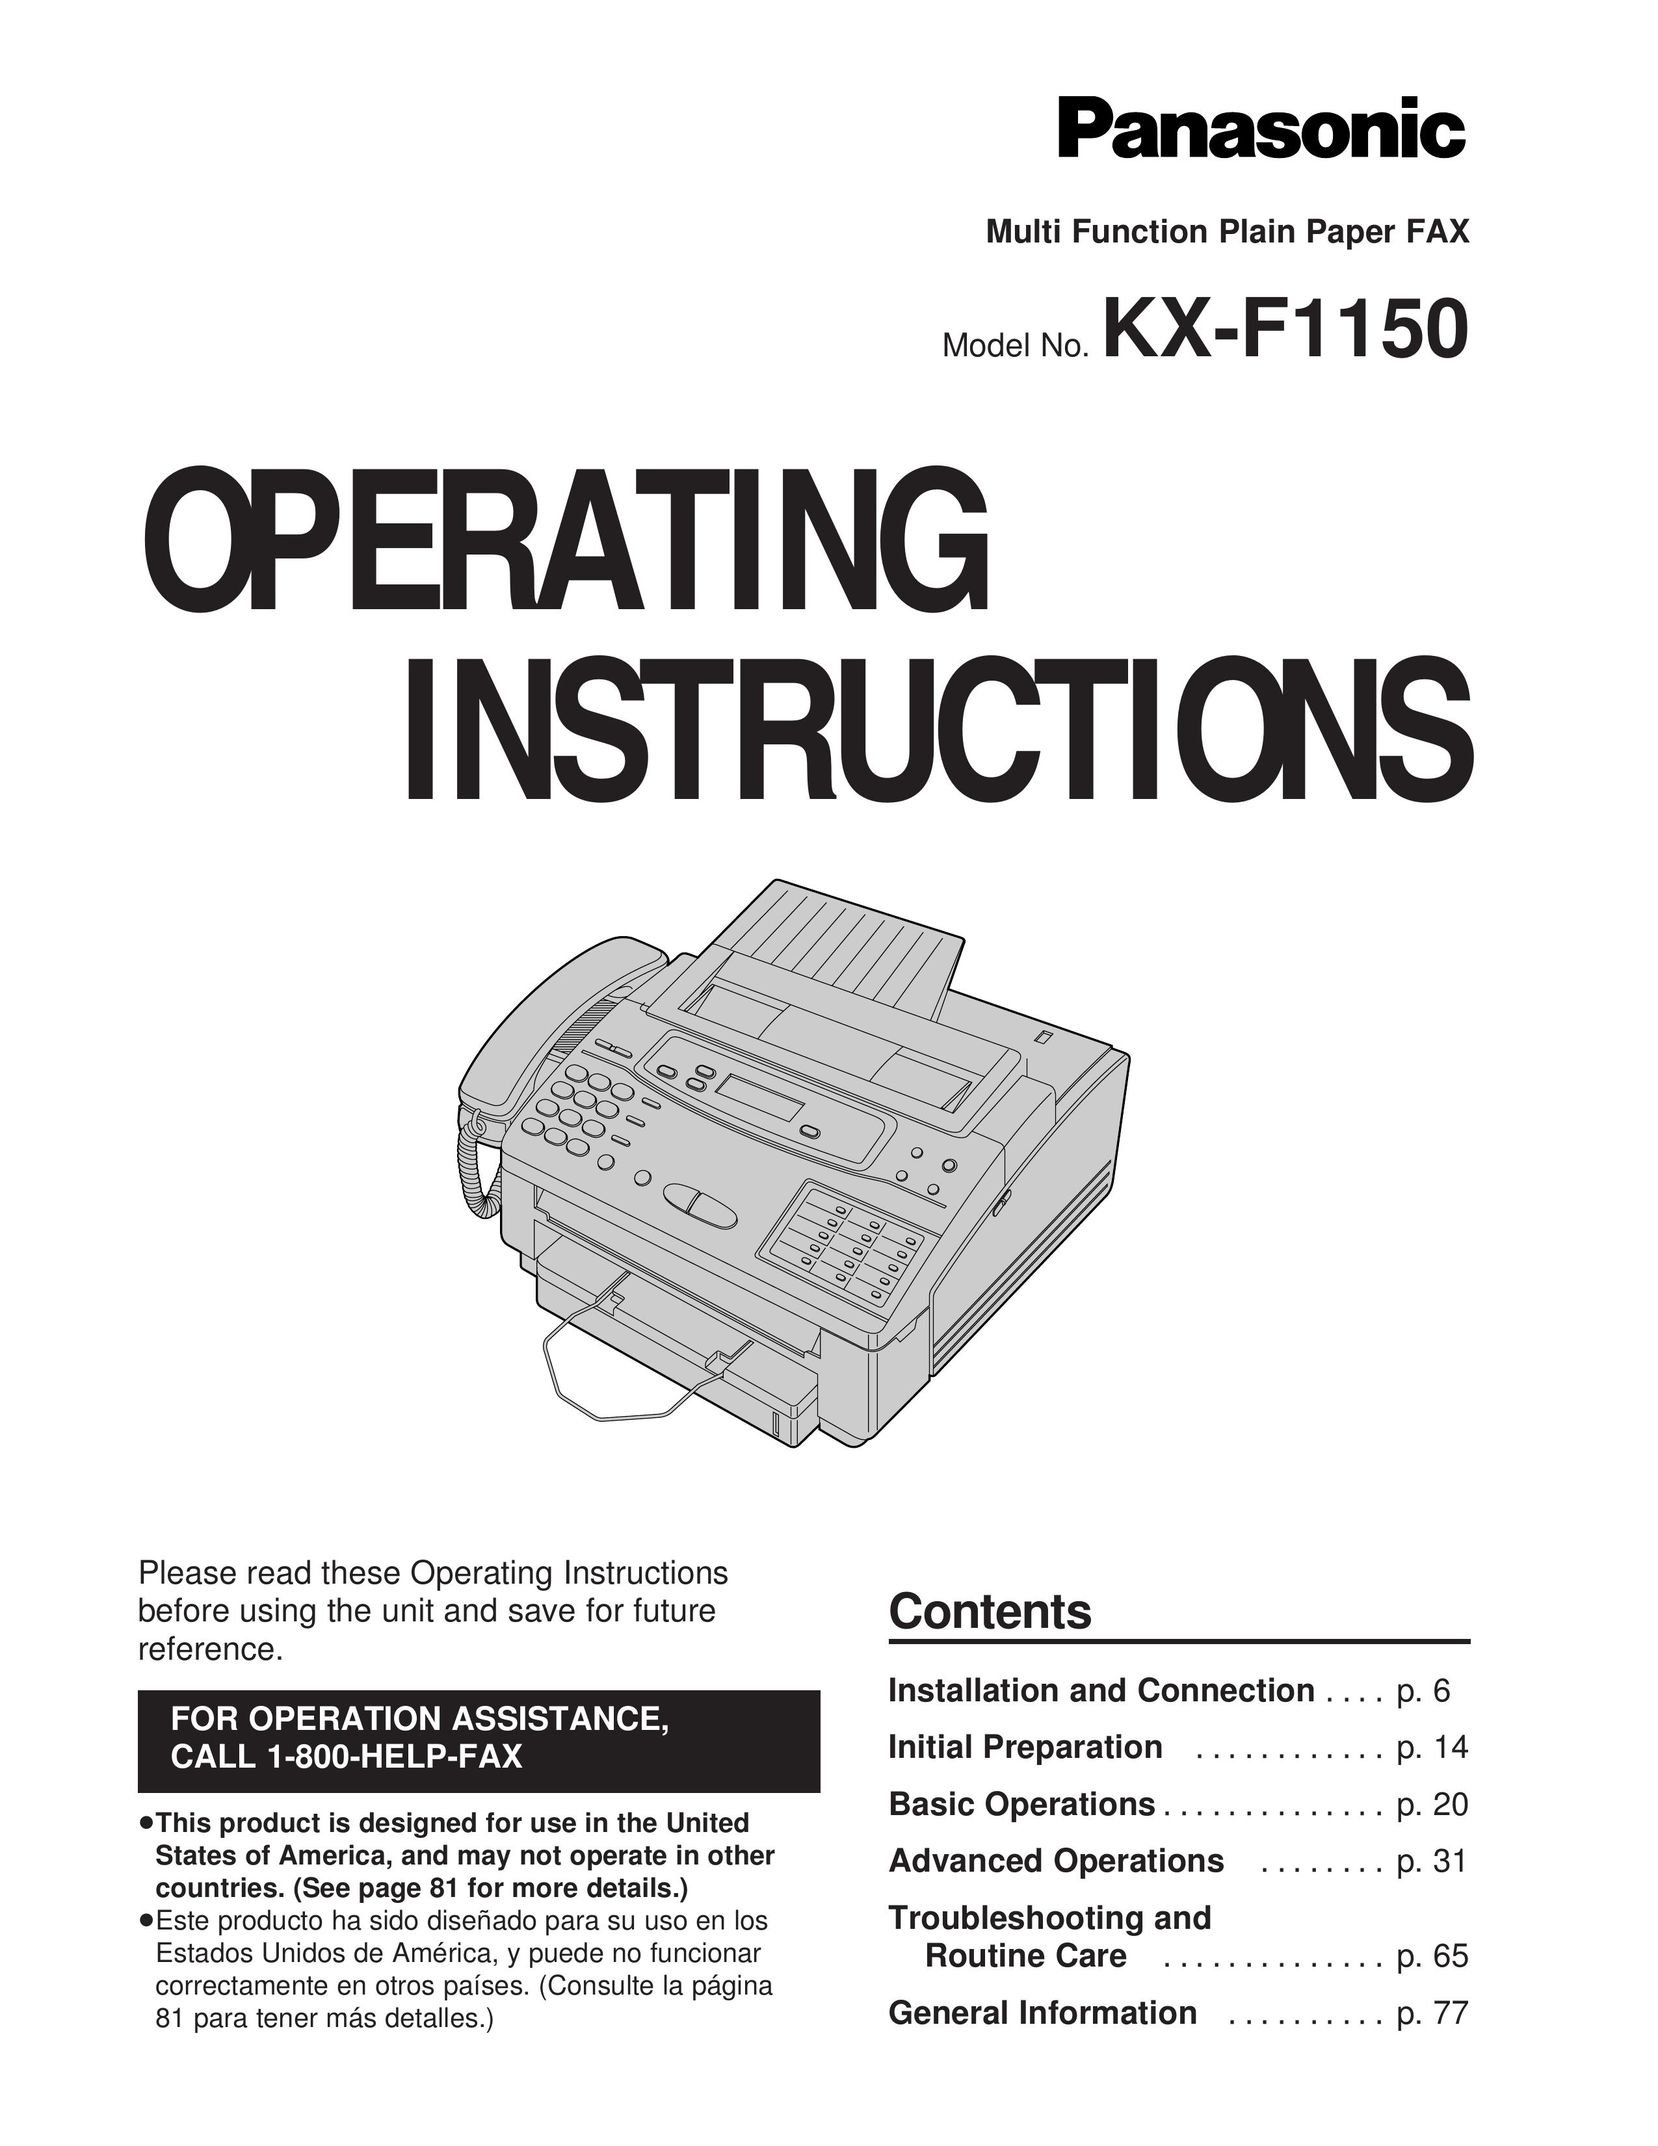 Technics KX-F1150 Fax Machine User Manual